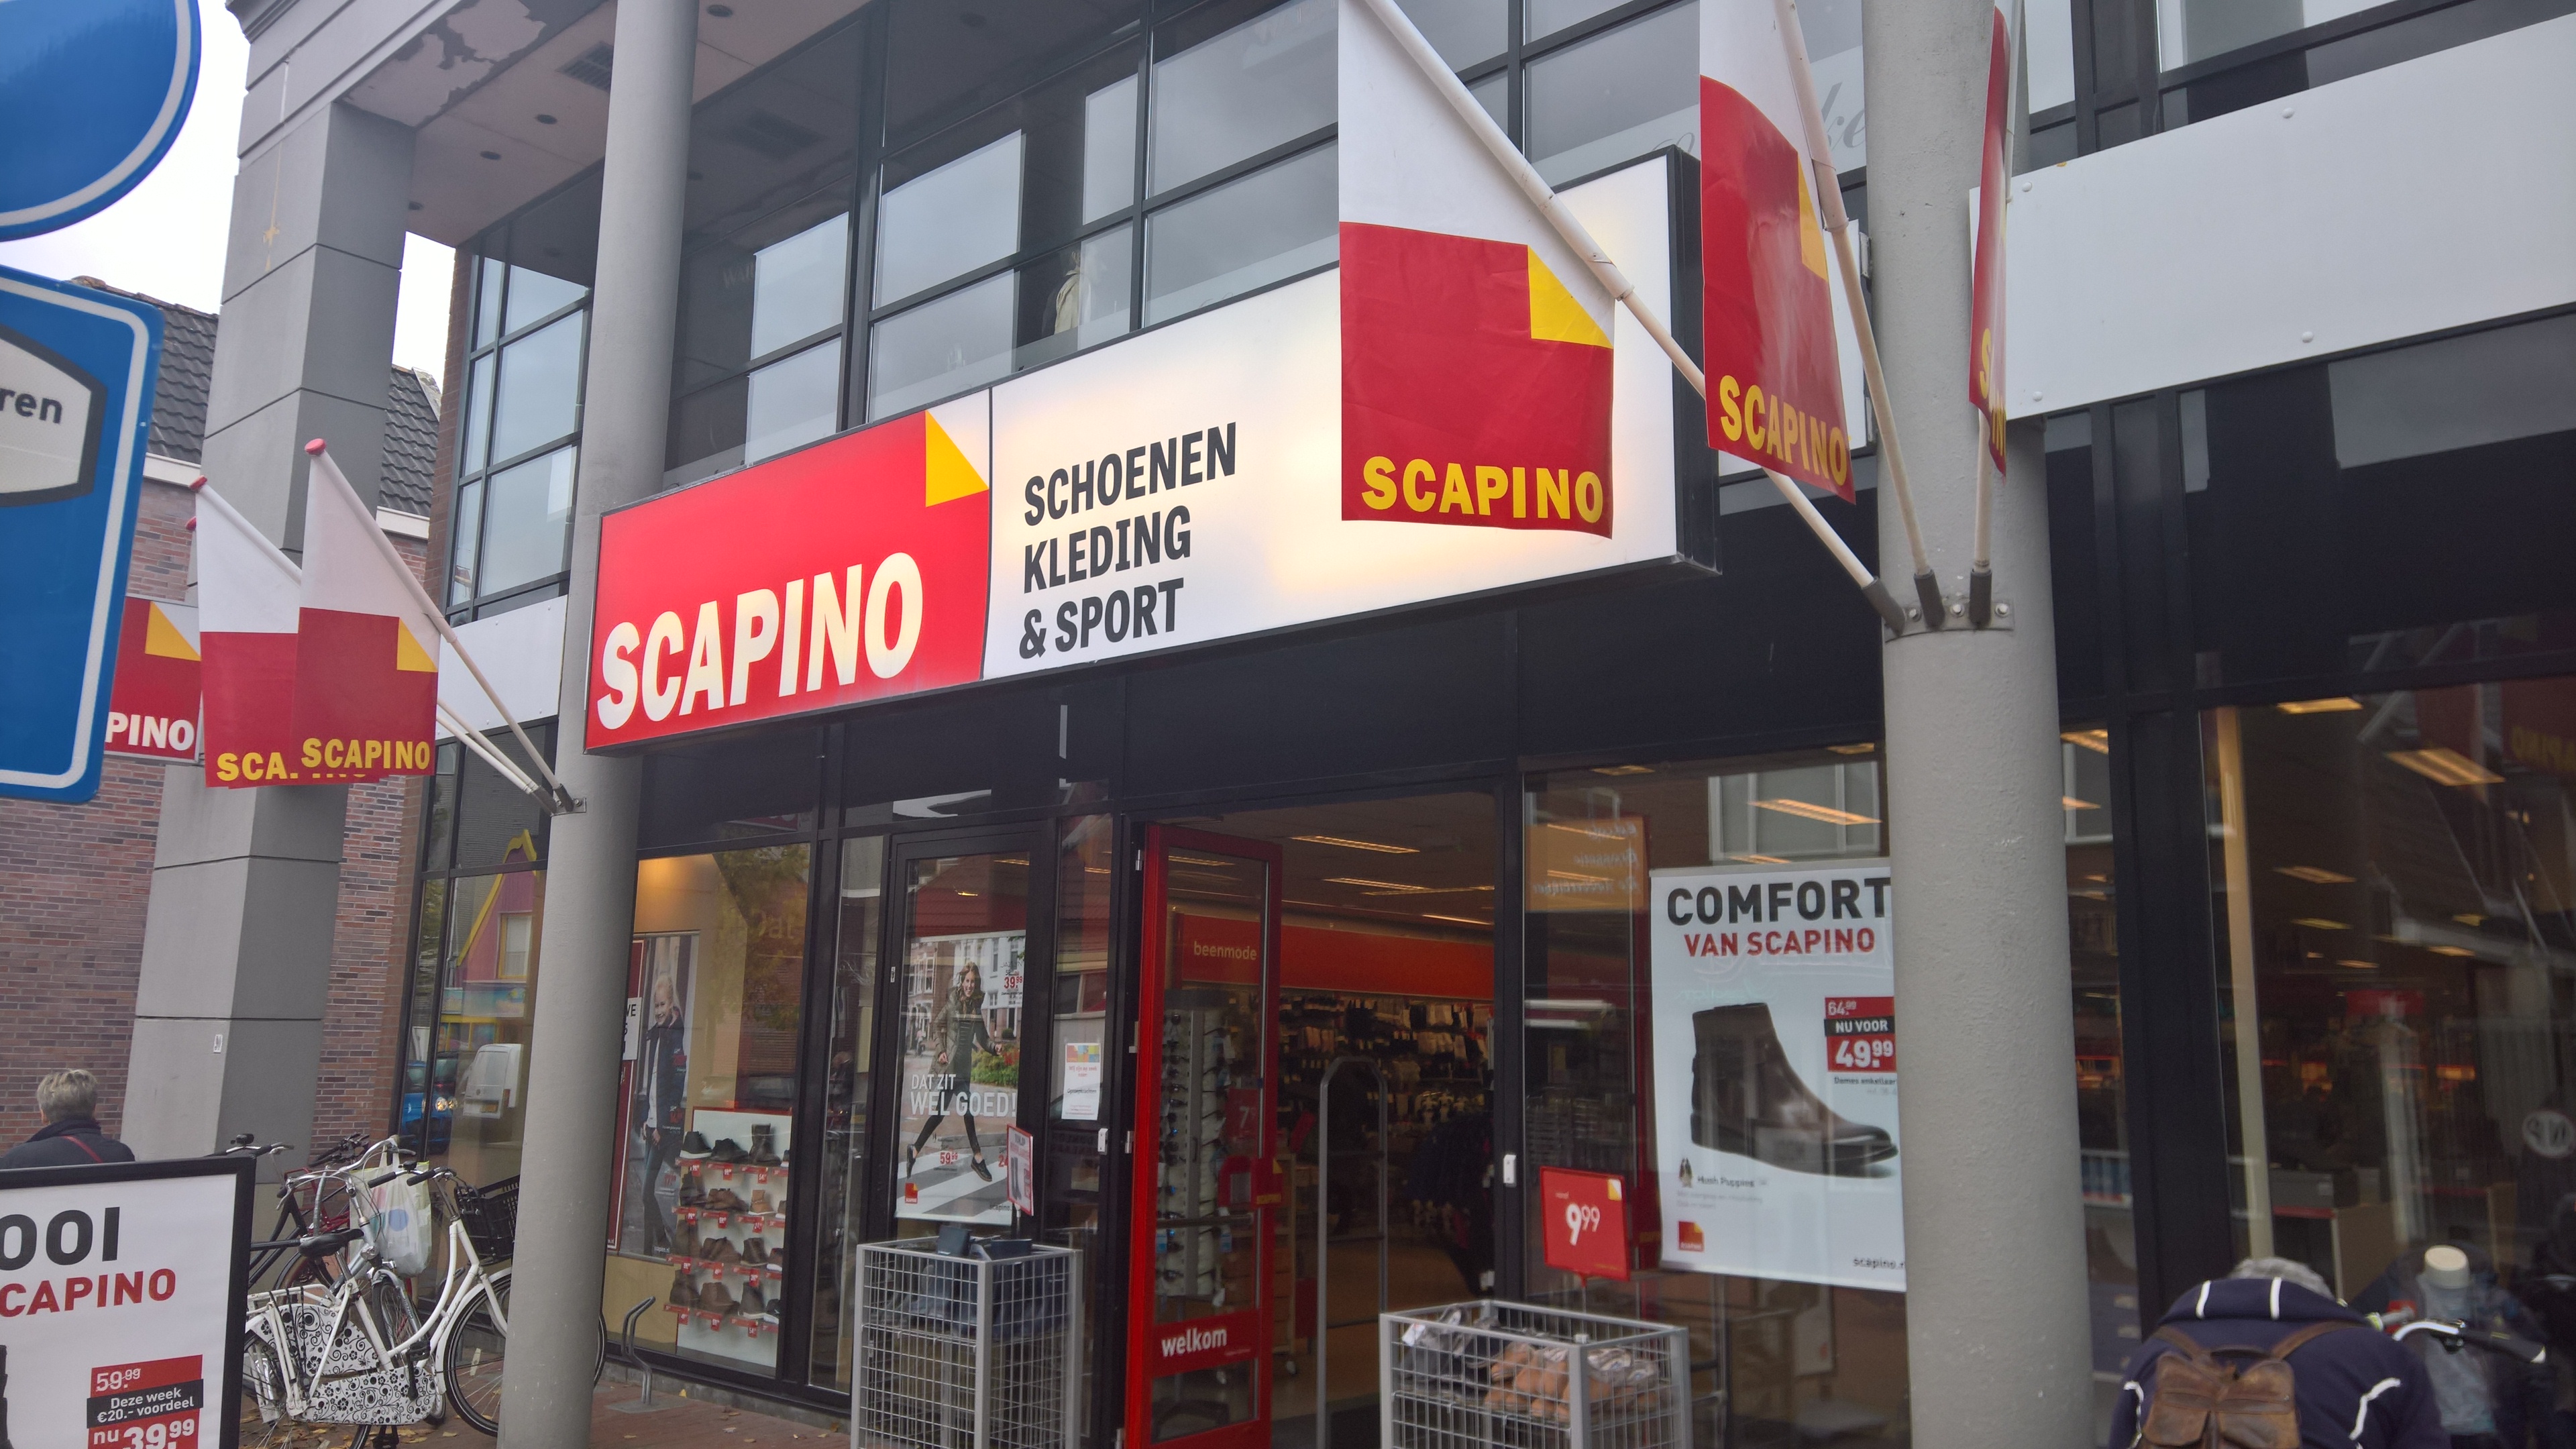 Handvol valuta toegang Scapino (winkelketen) - Wikipedia